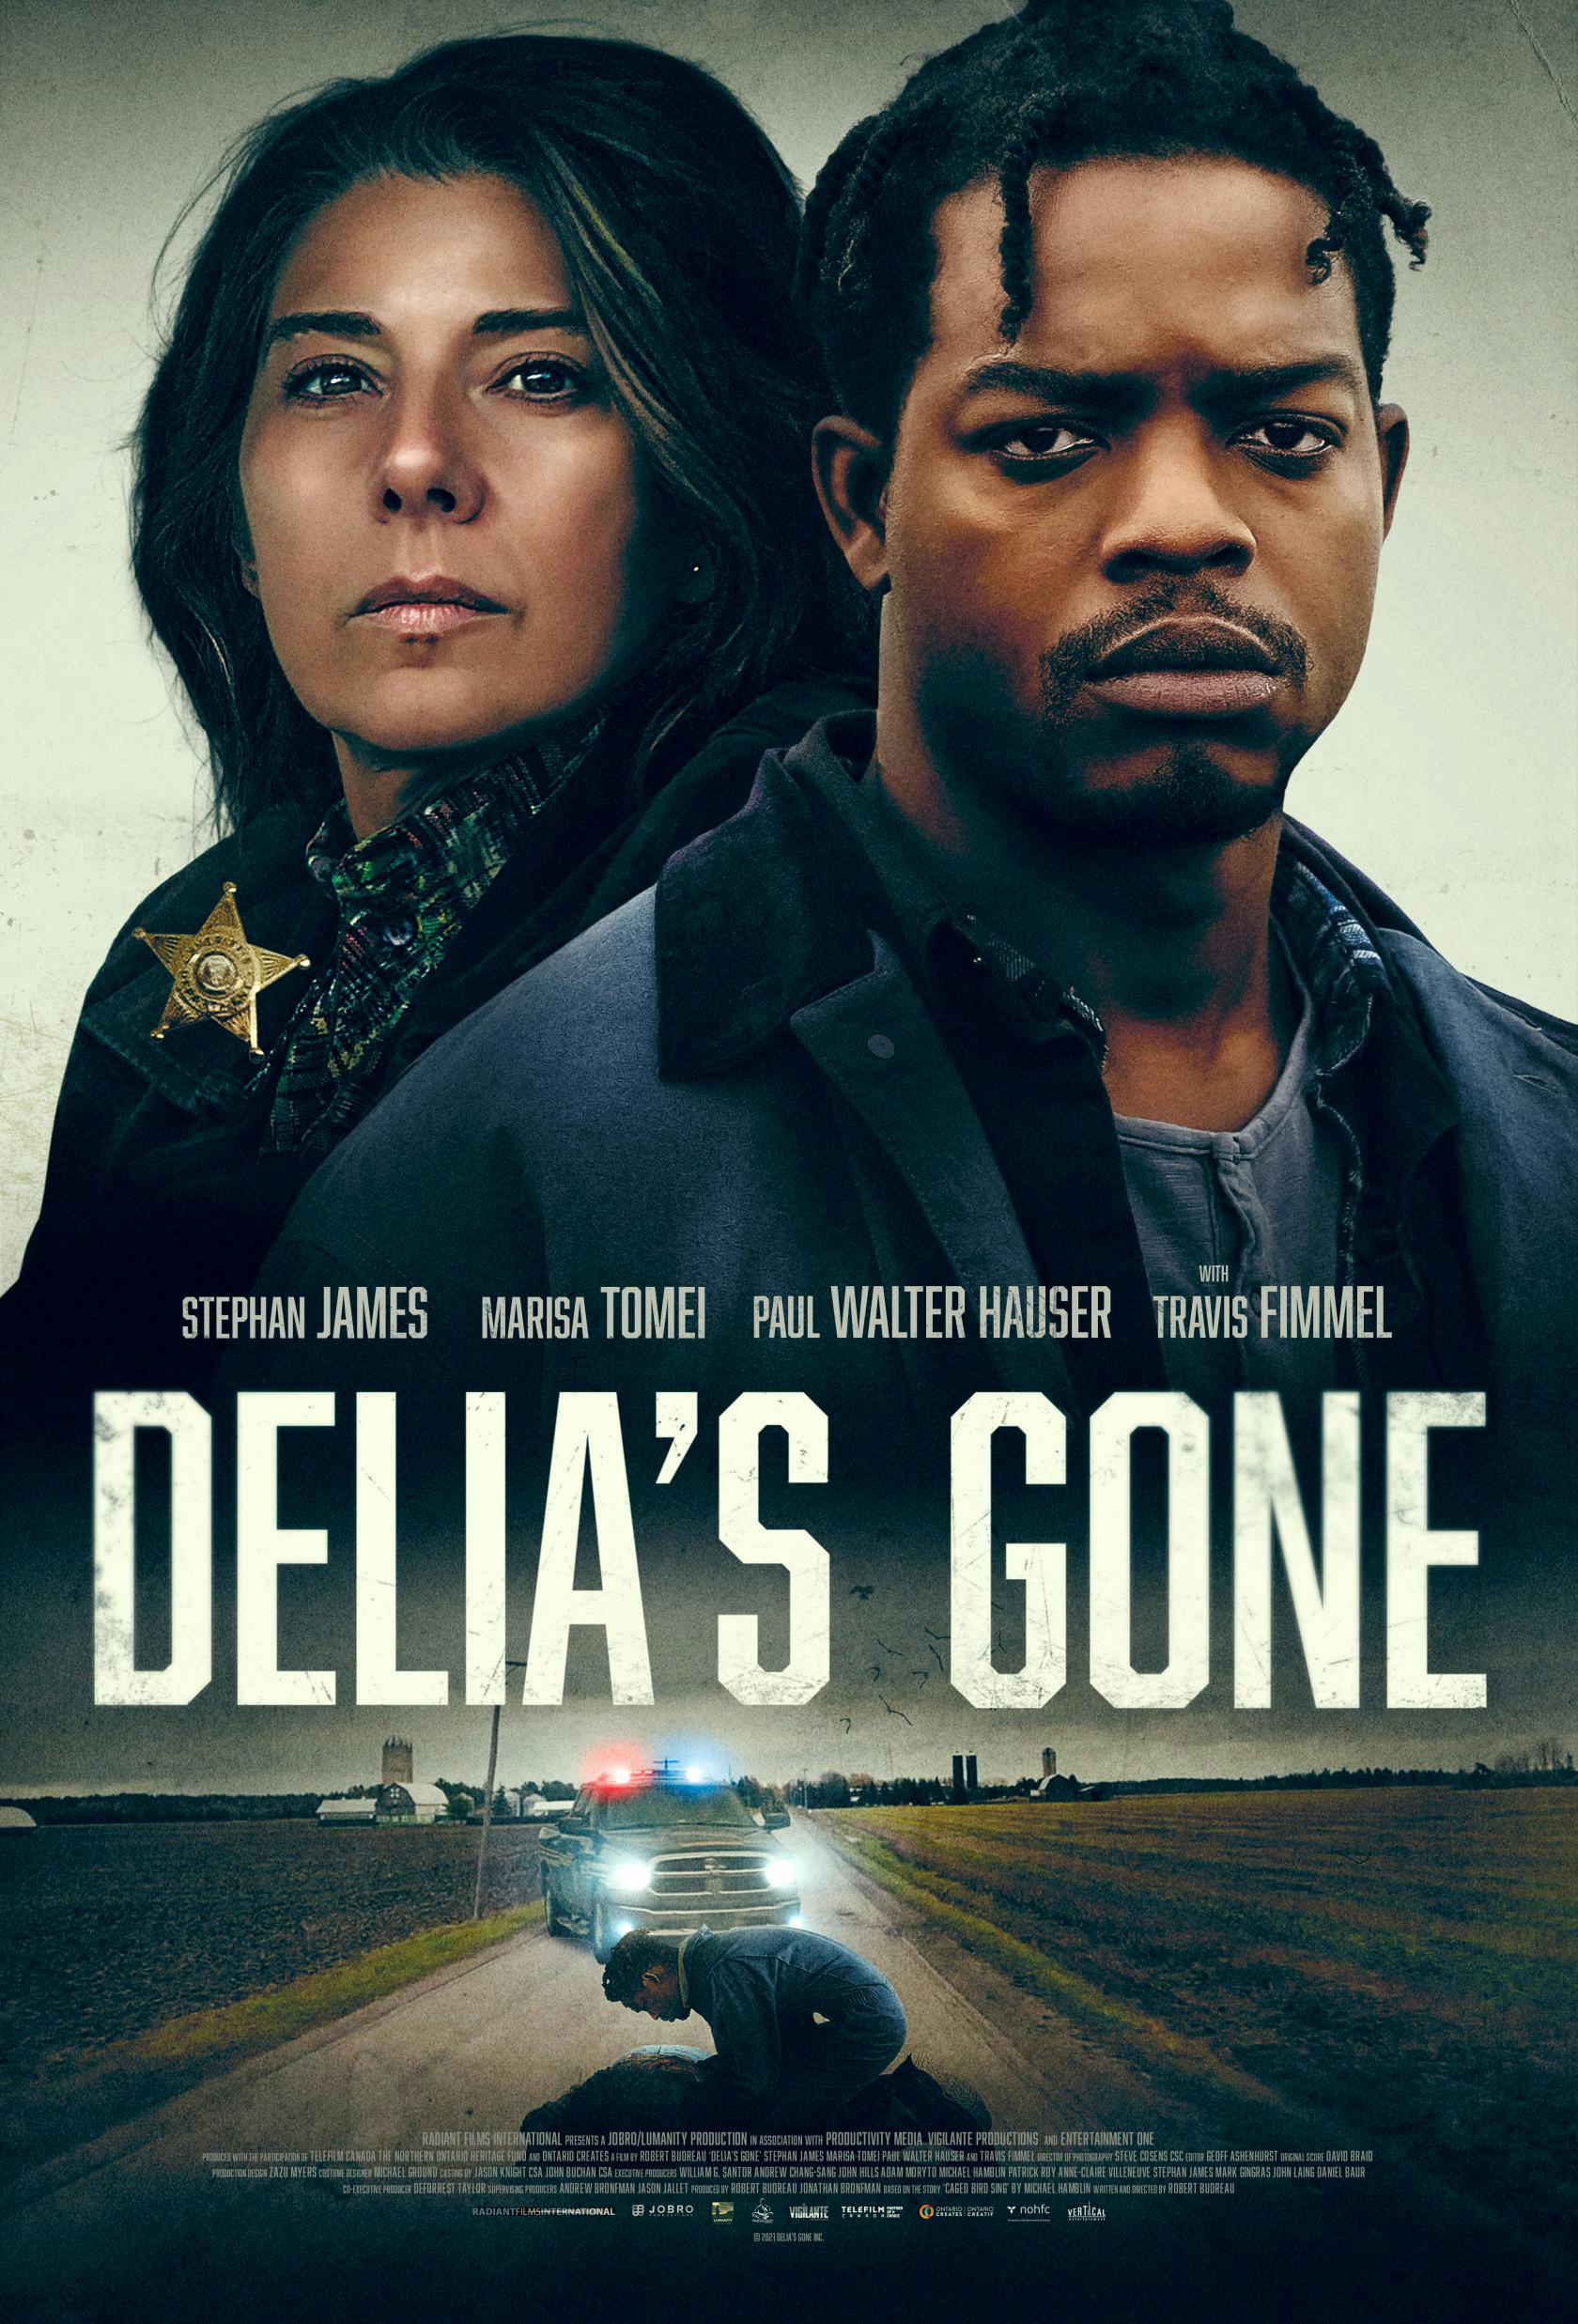 Delia’s Gone